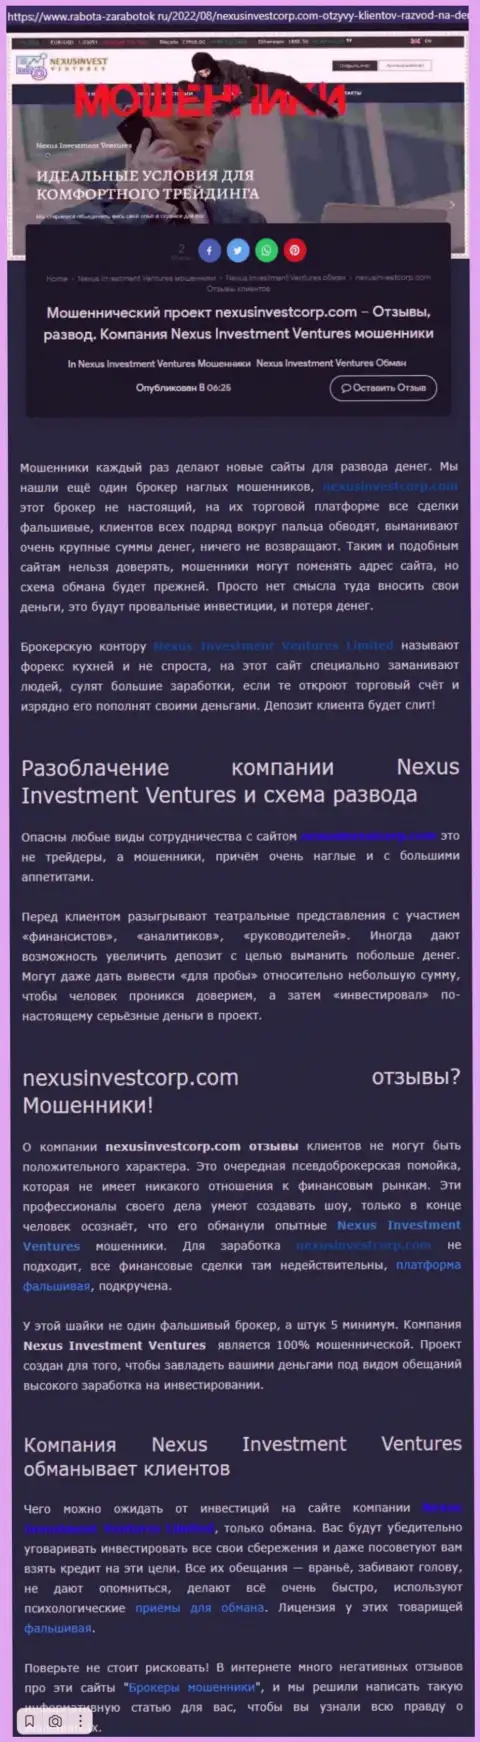 Если не хотите оказаться очередной жертвой Nexus Investment Ventures, бегите от них как можно дальше (обзор неправомерных действий)